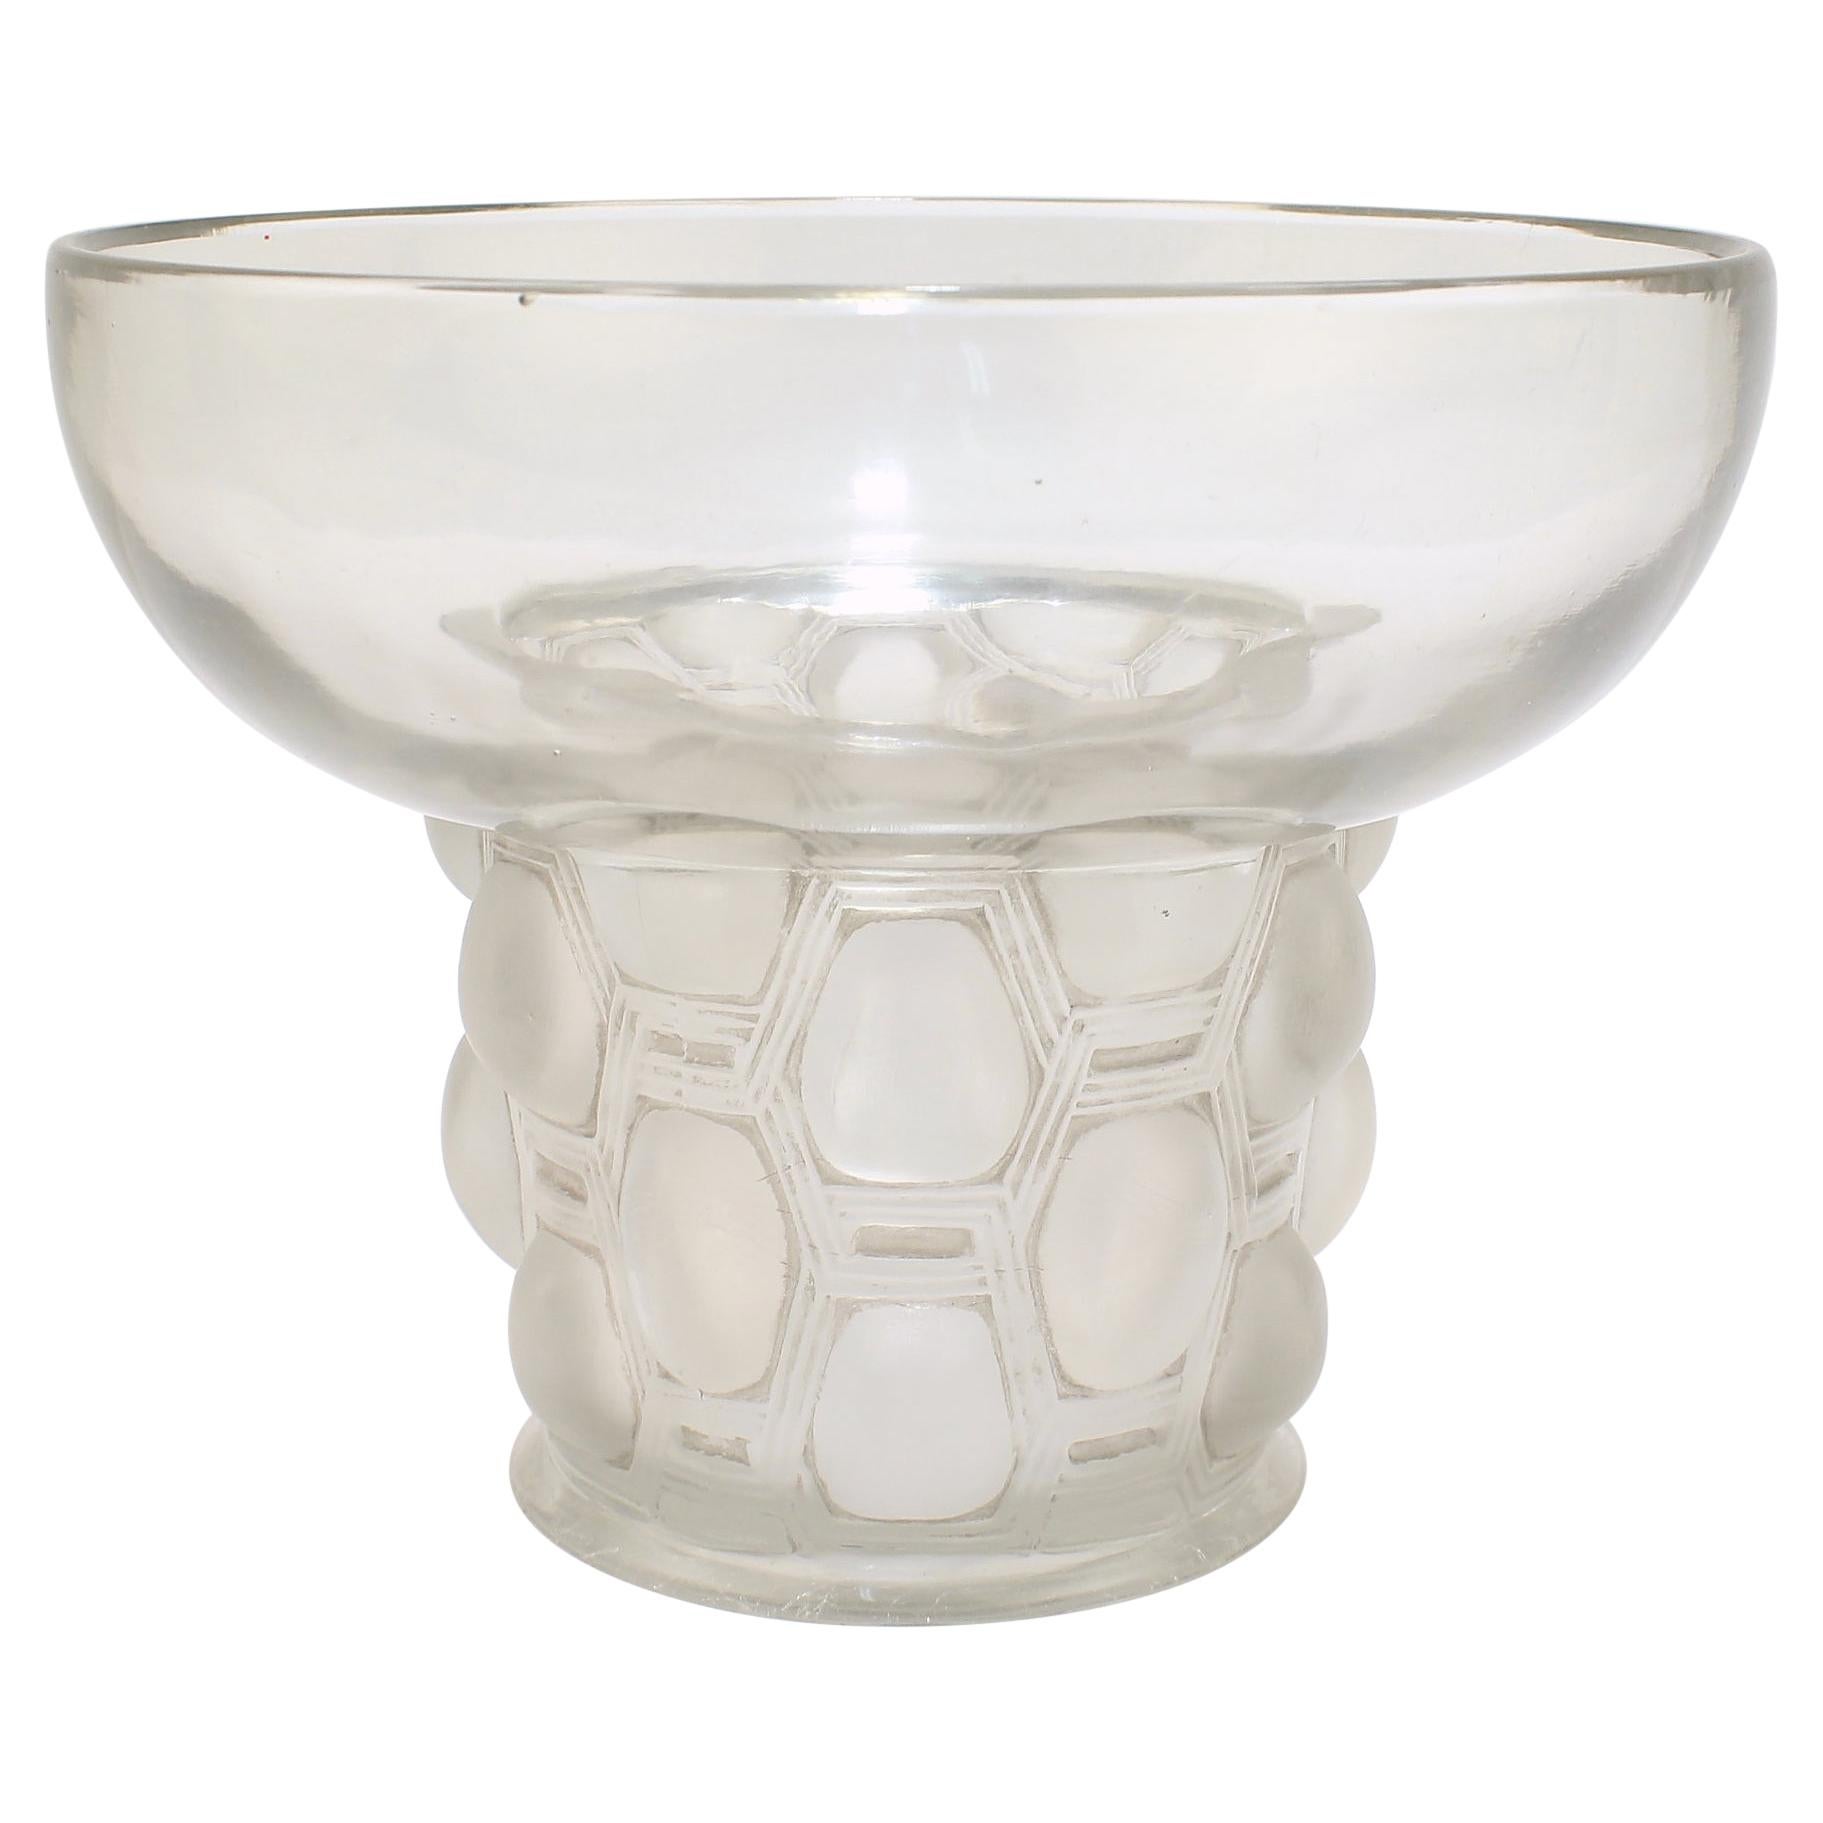 Signed Rene Lalique Art Deco Period Beautreillis Art Glass Vase